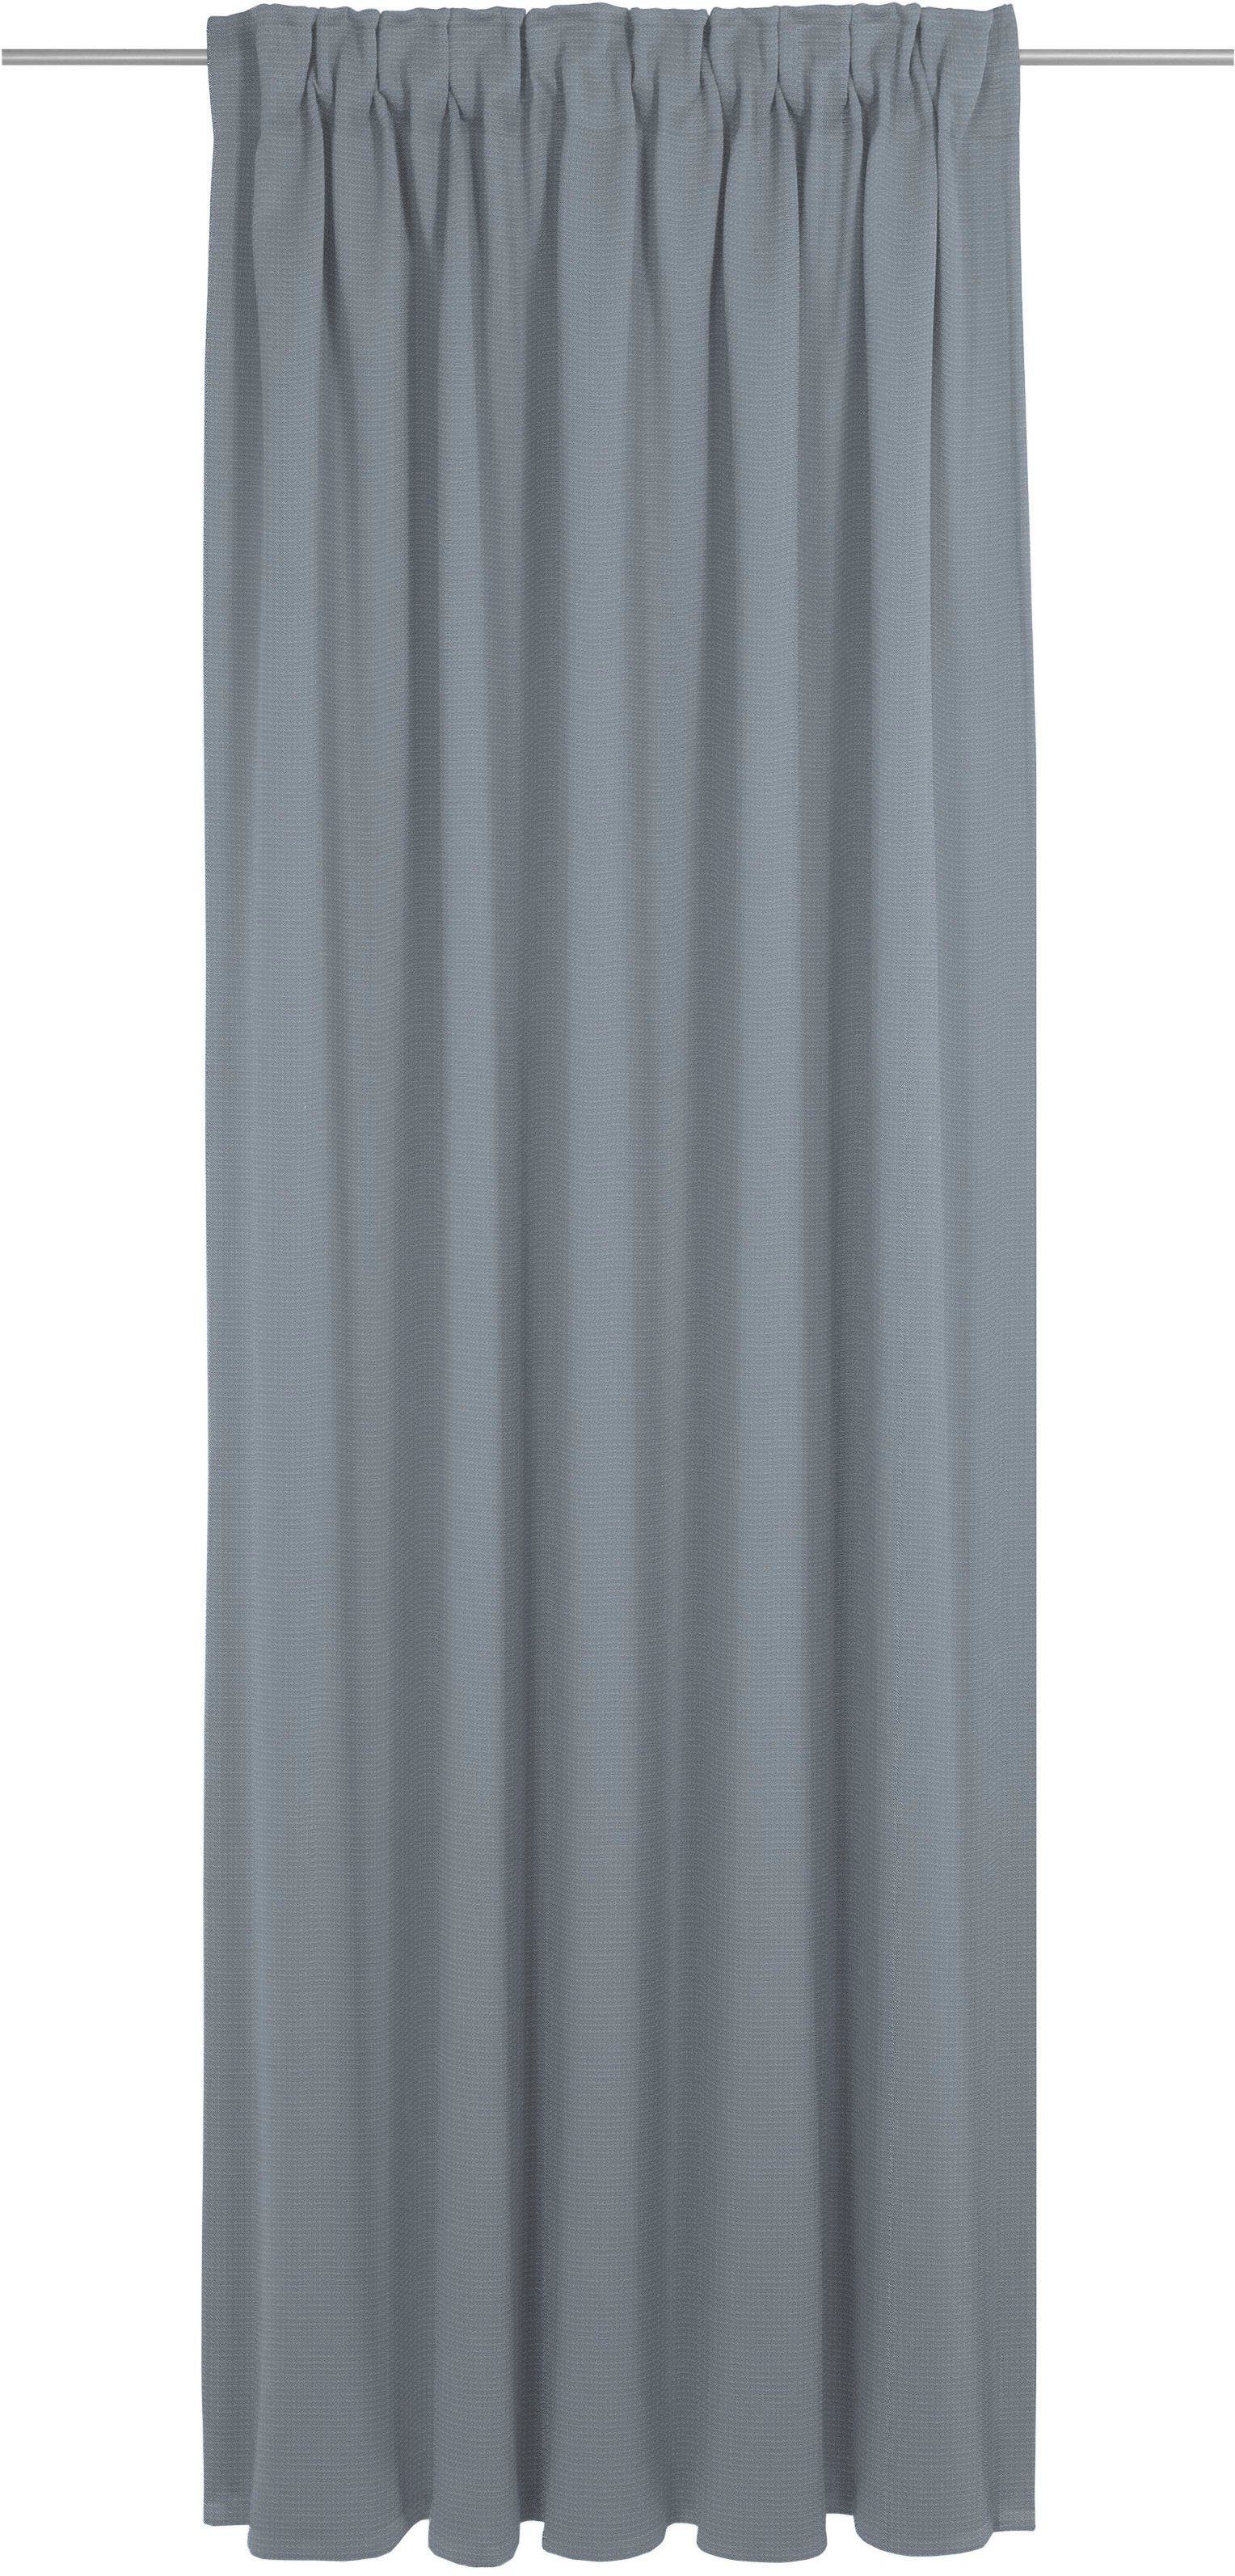 Vorhang Uni Collection light, Wirth, Multifunktionsband (1 St), blickdicht, nach Maß königsblau